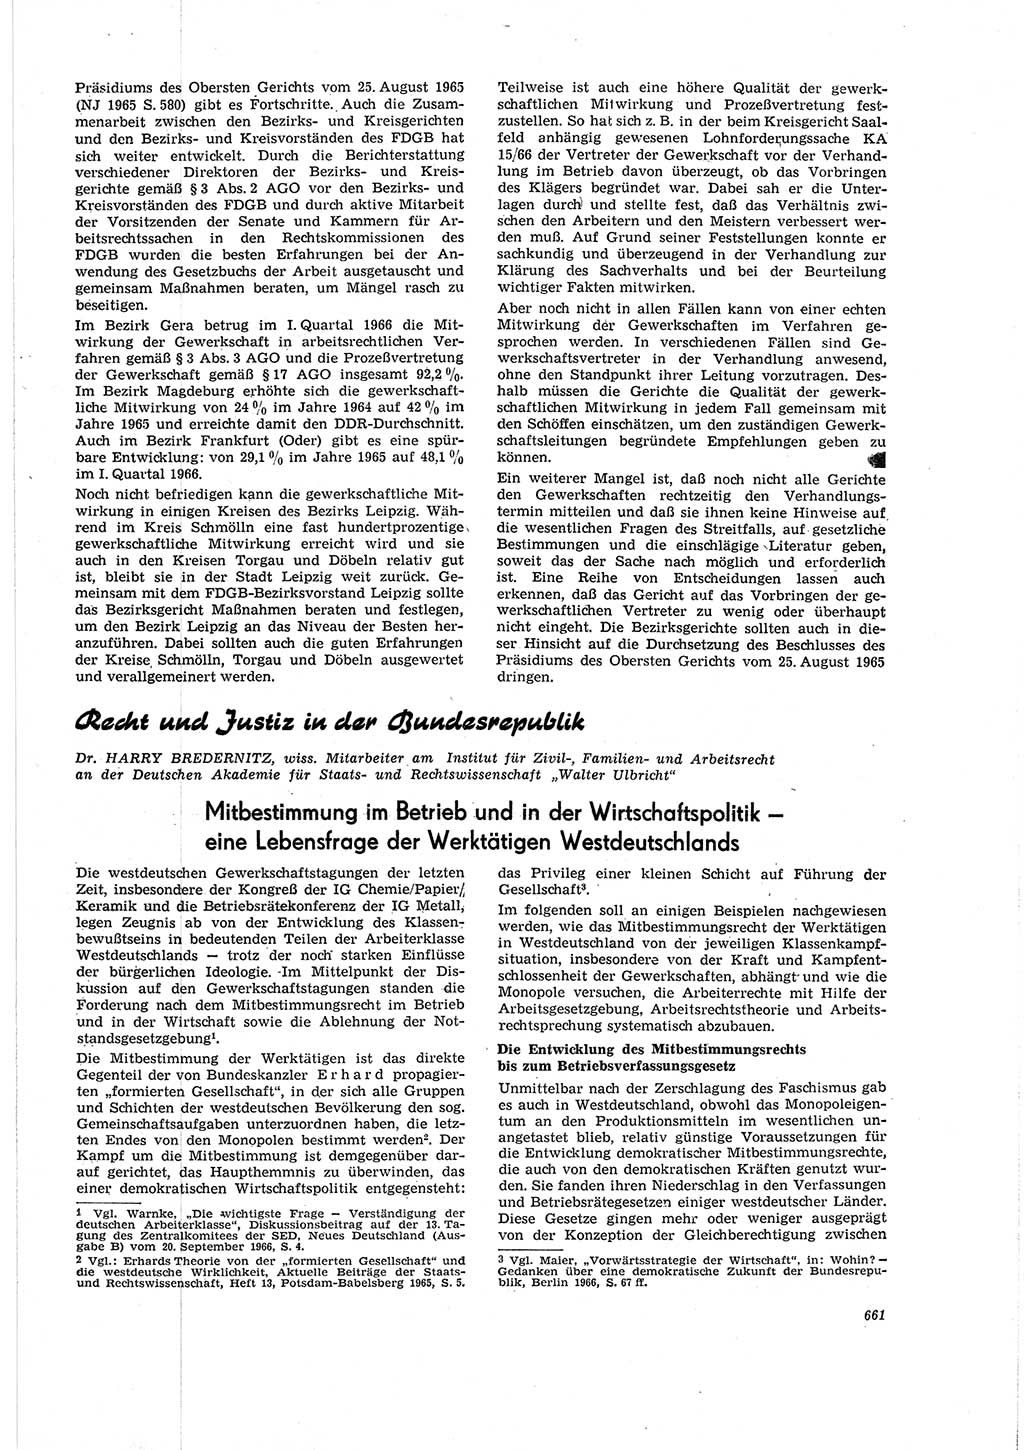 Neue Justiz (NJ), Zeitschrift für Recht und Rechtswissenschaft [Deutsche Demokratische Republik (DDR)], 20. Jahrgang 1966, Seite 661 (NJ DDR 1966, S. 661)